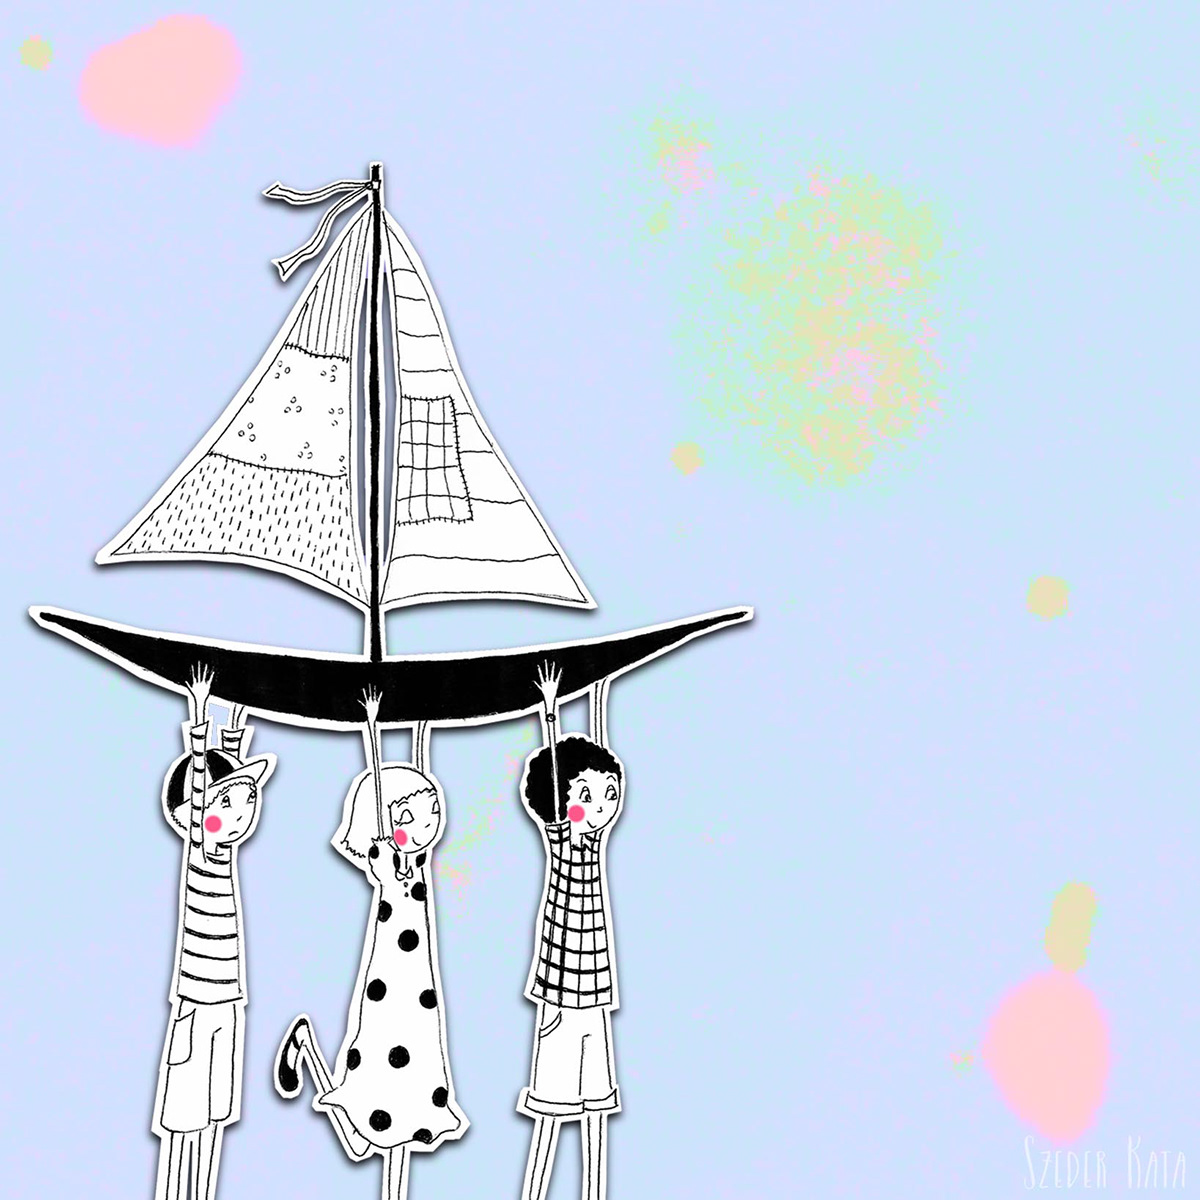 characters sailing